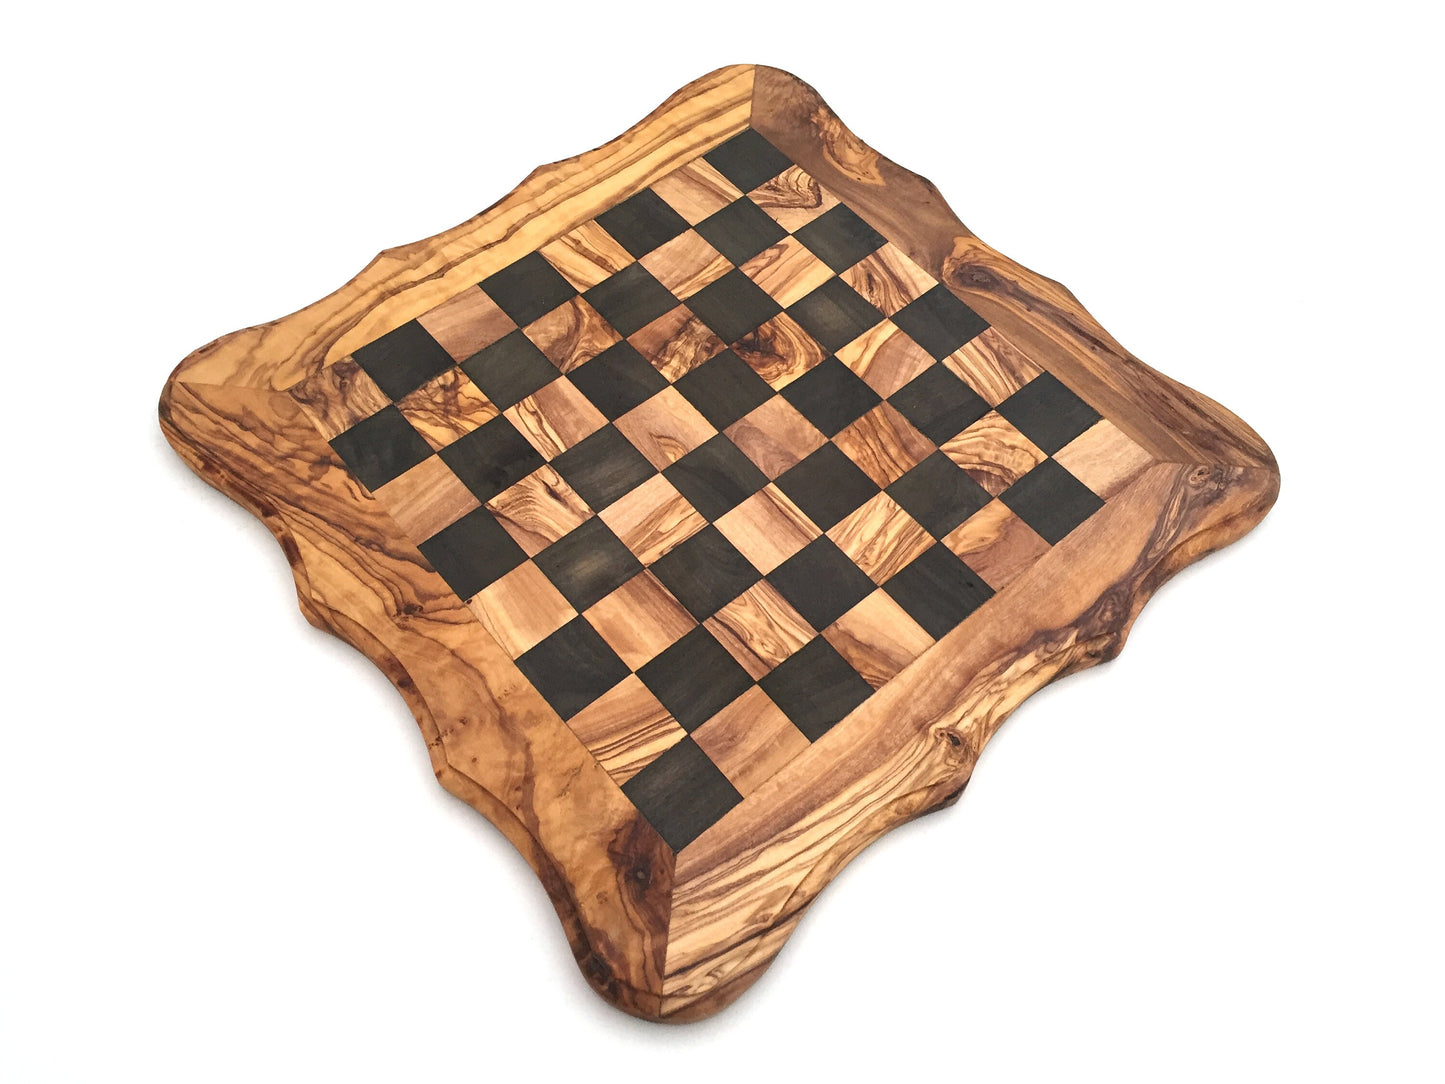 Schachspiel abgerundete Kante Größe wählbar ohne Schachfiguren